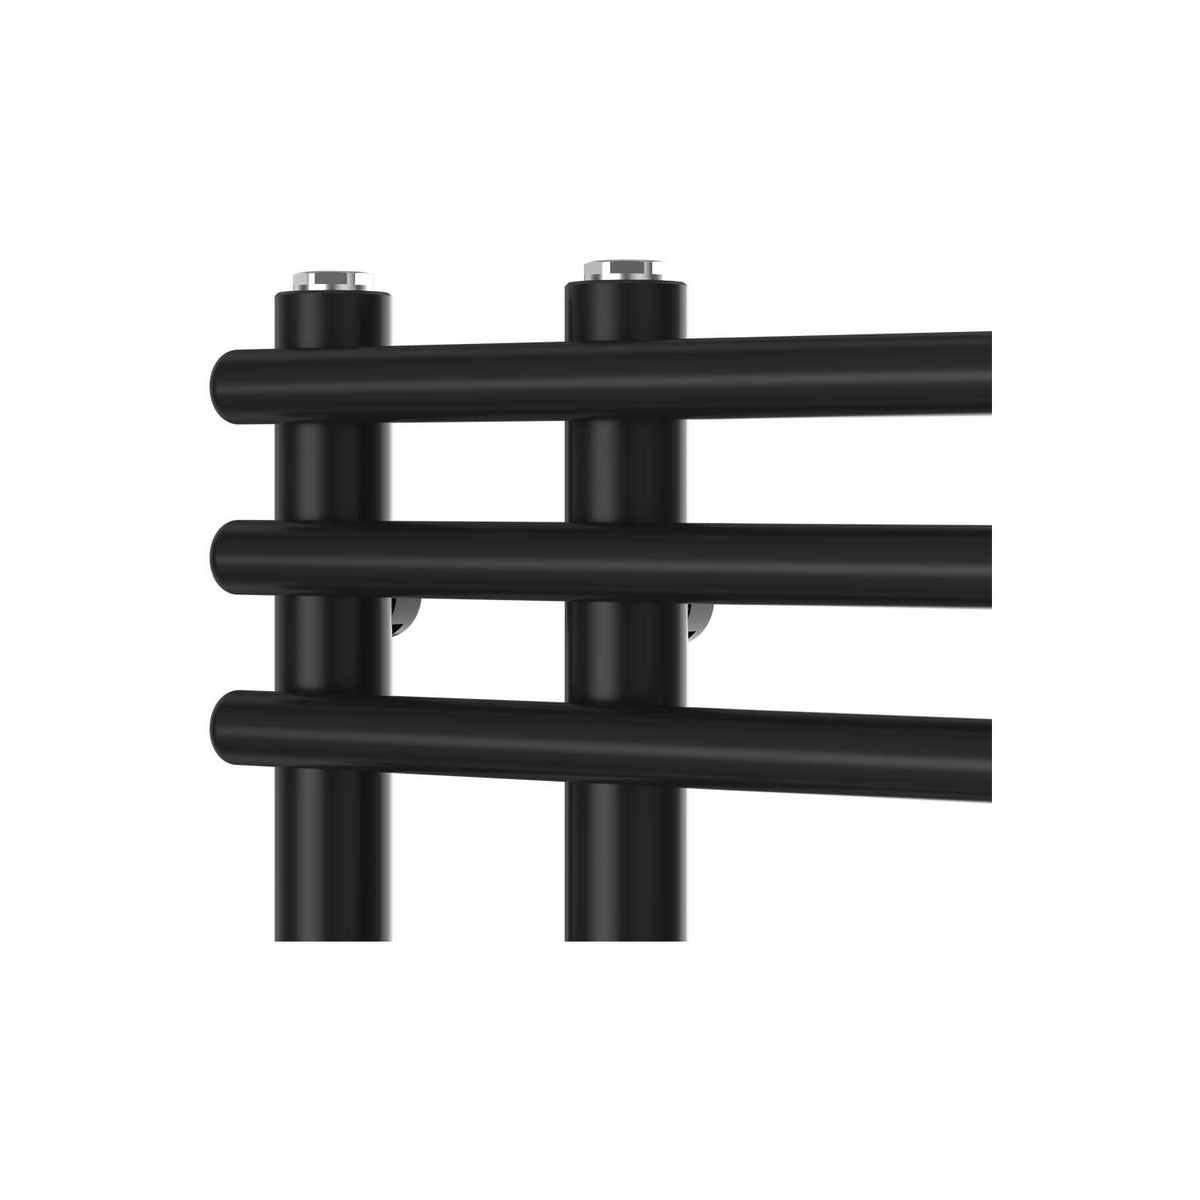 Difta Heated Towel Rail Radiator Flat Black detail